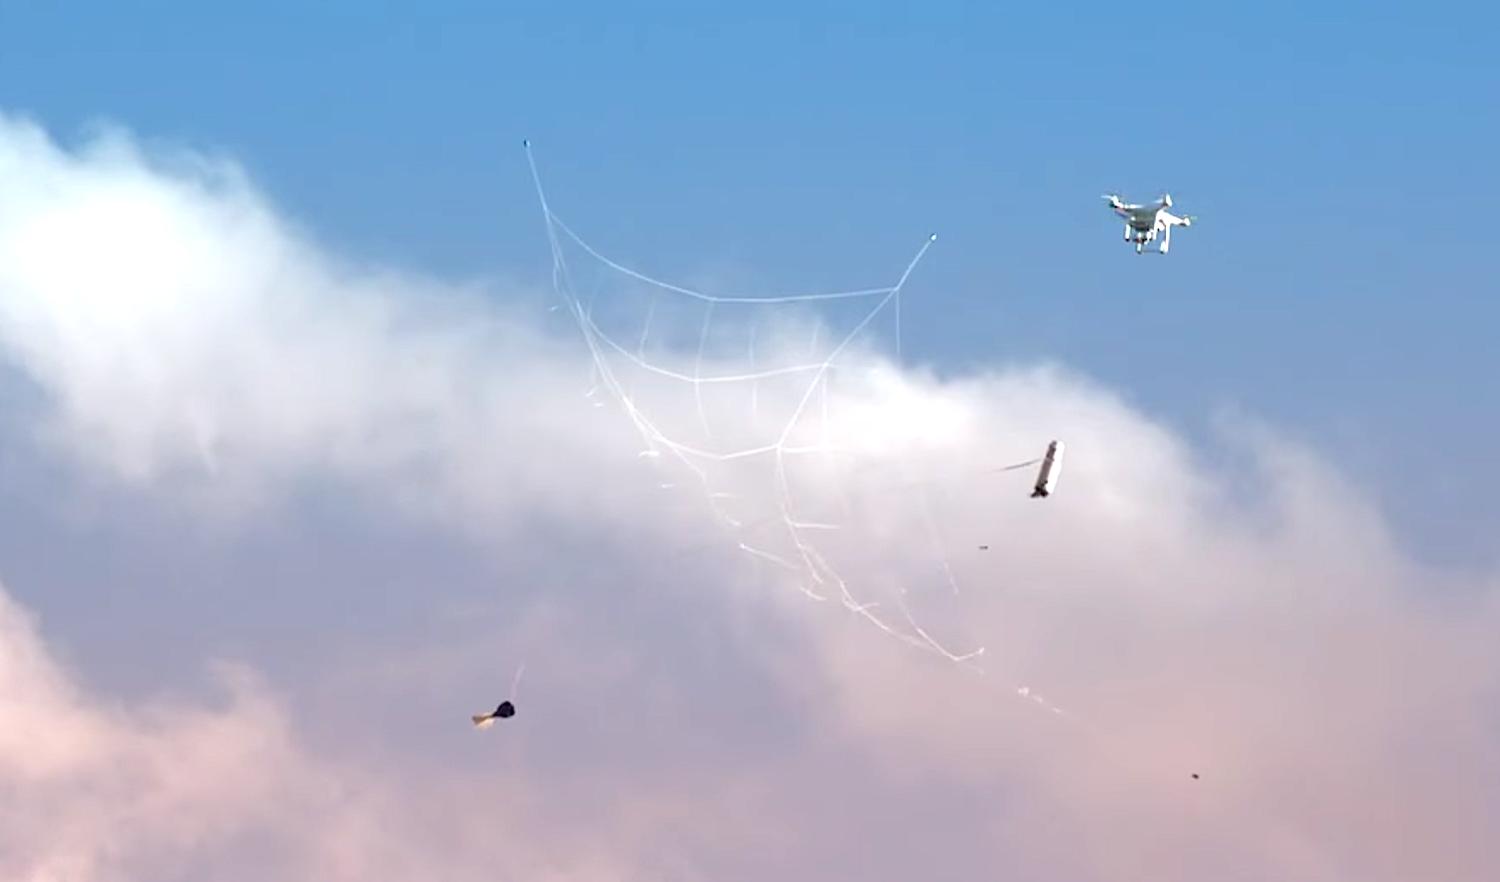 Kurz vor der Drohne entfaltet das Projektil ein quadratisches Netz. Es fängt das unbemannte Flugobjekt ein und bringt es an einem Fallschirm zum Boden. 